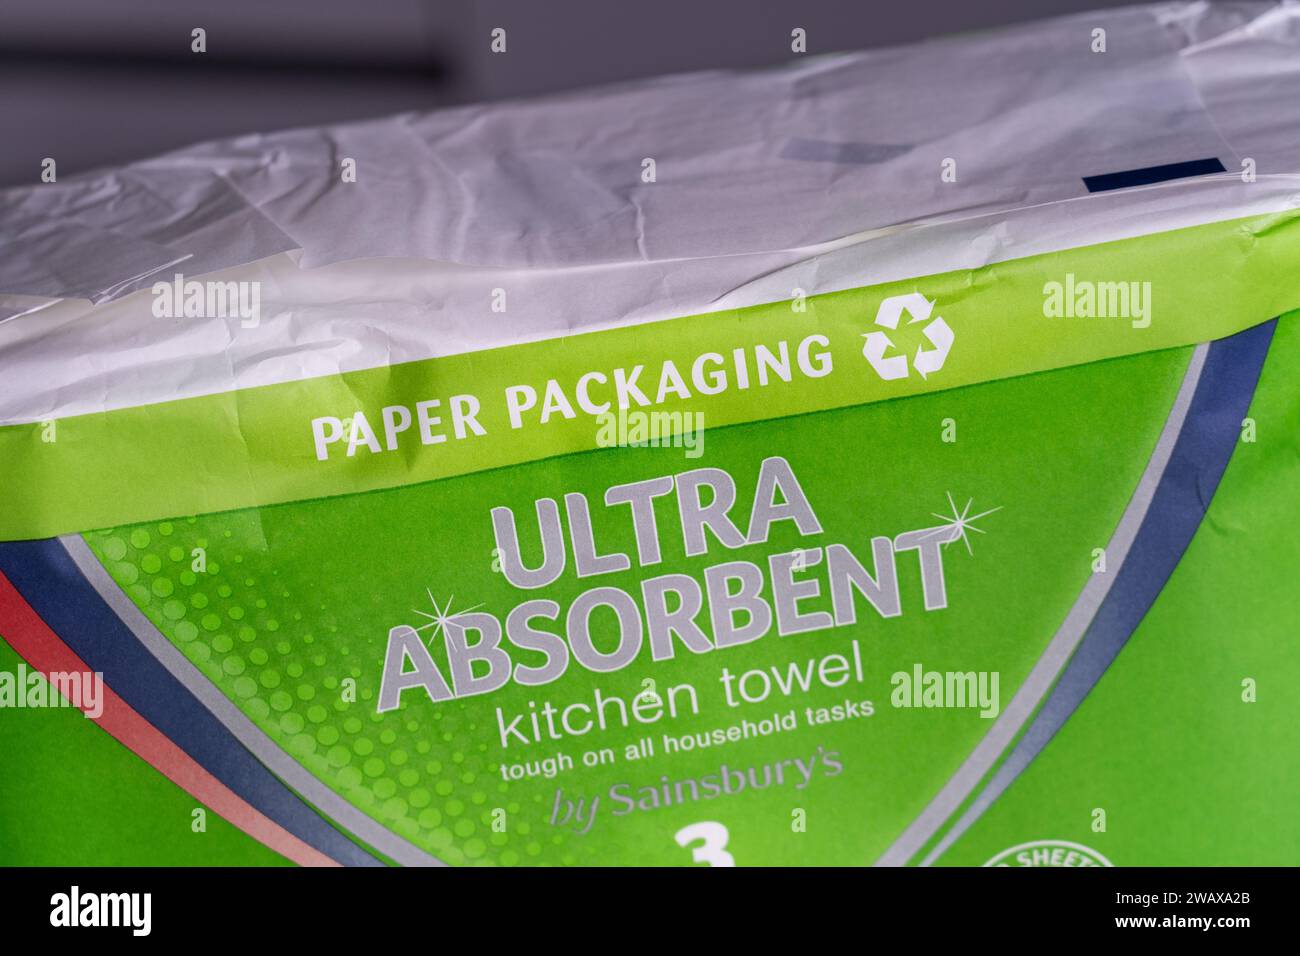 Emballage de serviettes de cuisine de marque Sainsbury avec emballage en papier et symbole de recyclage, Royaume-Uni. Concept : réduction des déchets, réduction des déchets plastiques Banque D'Images